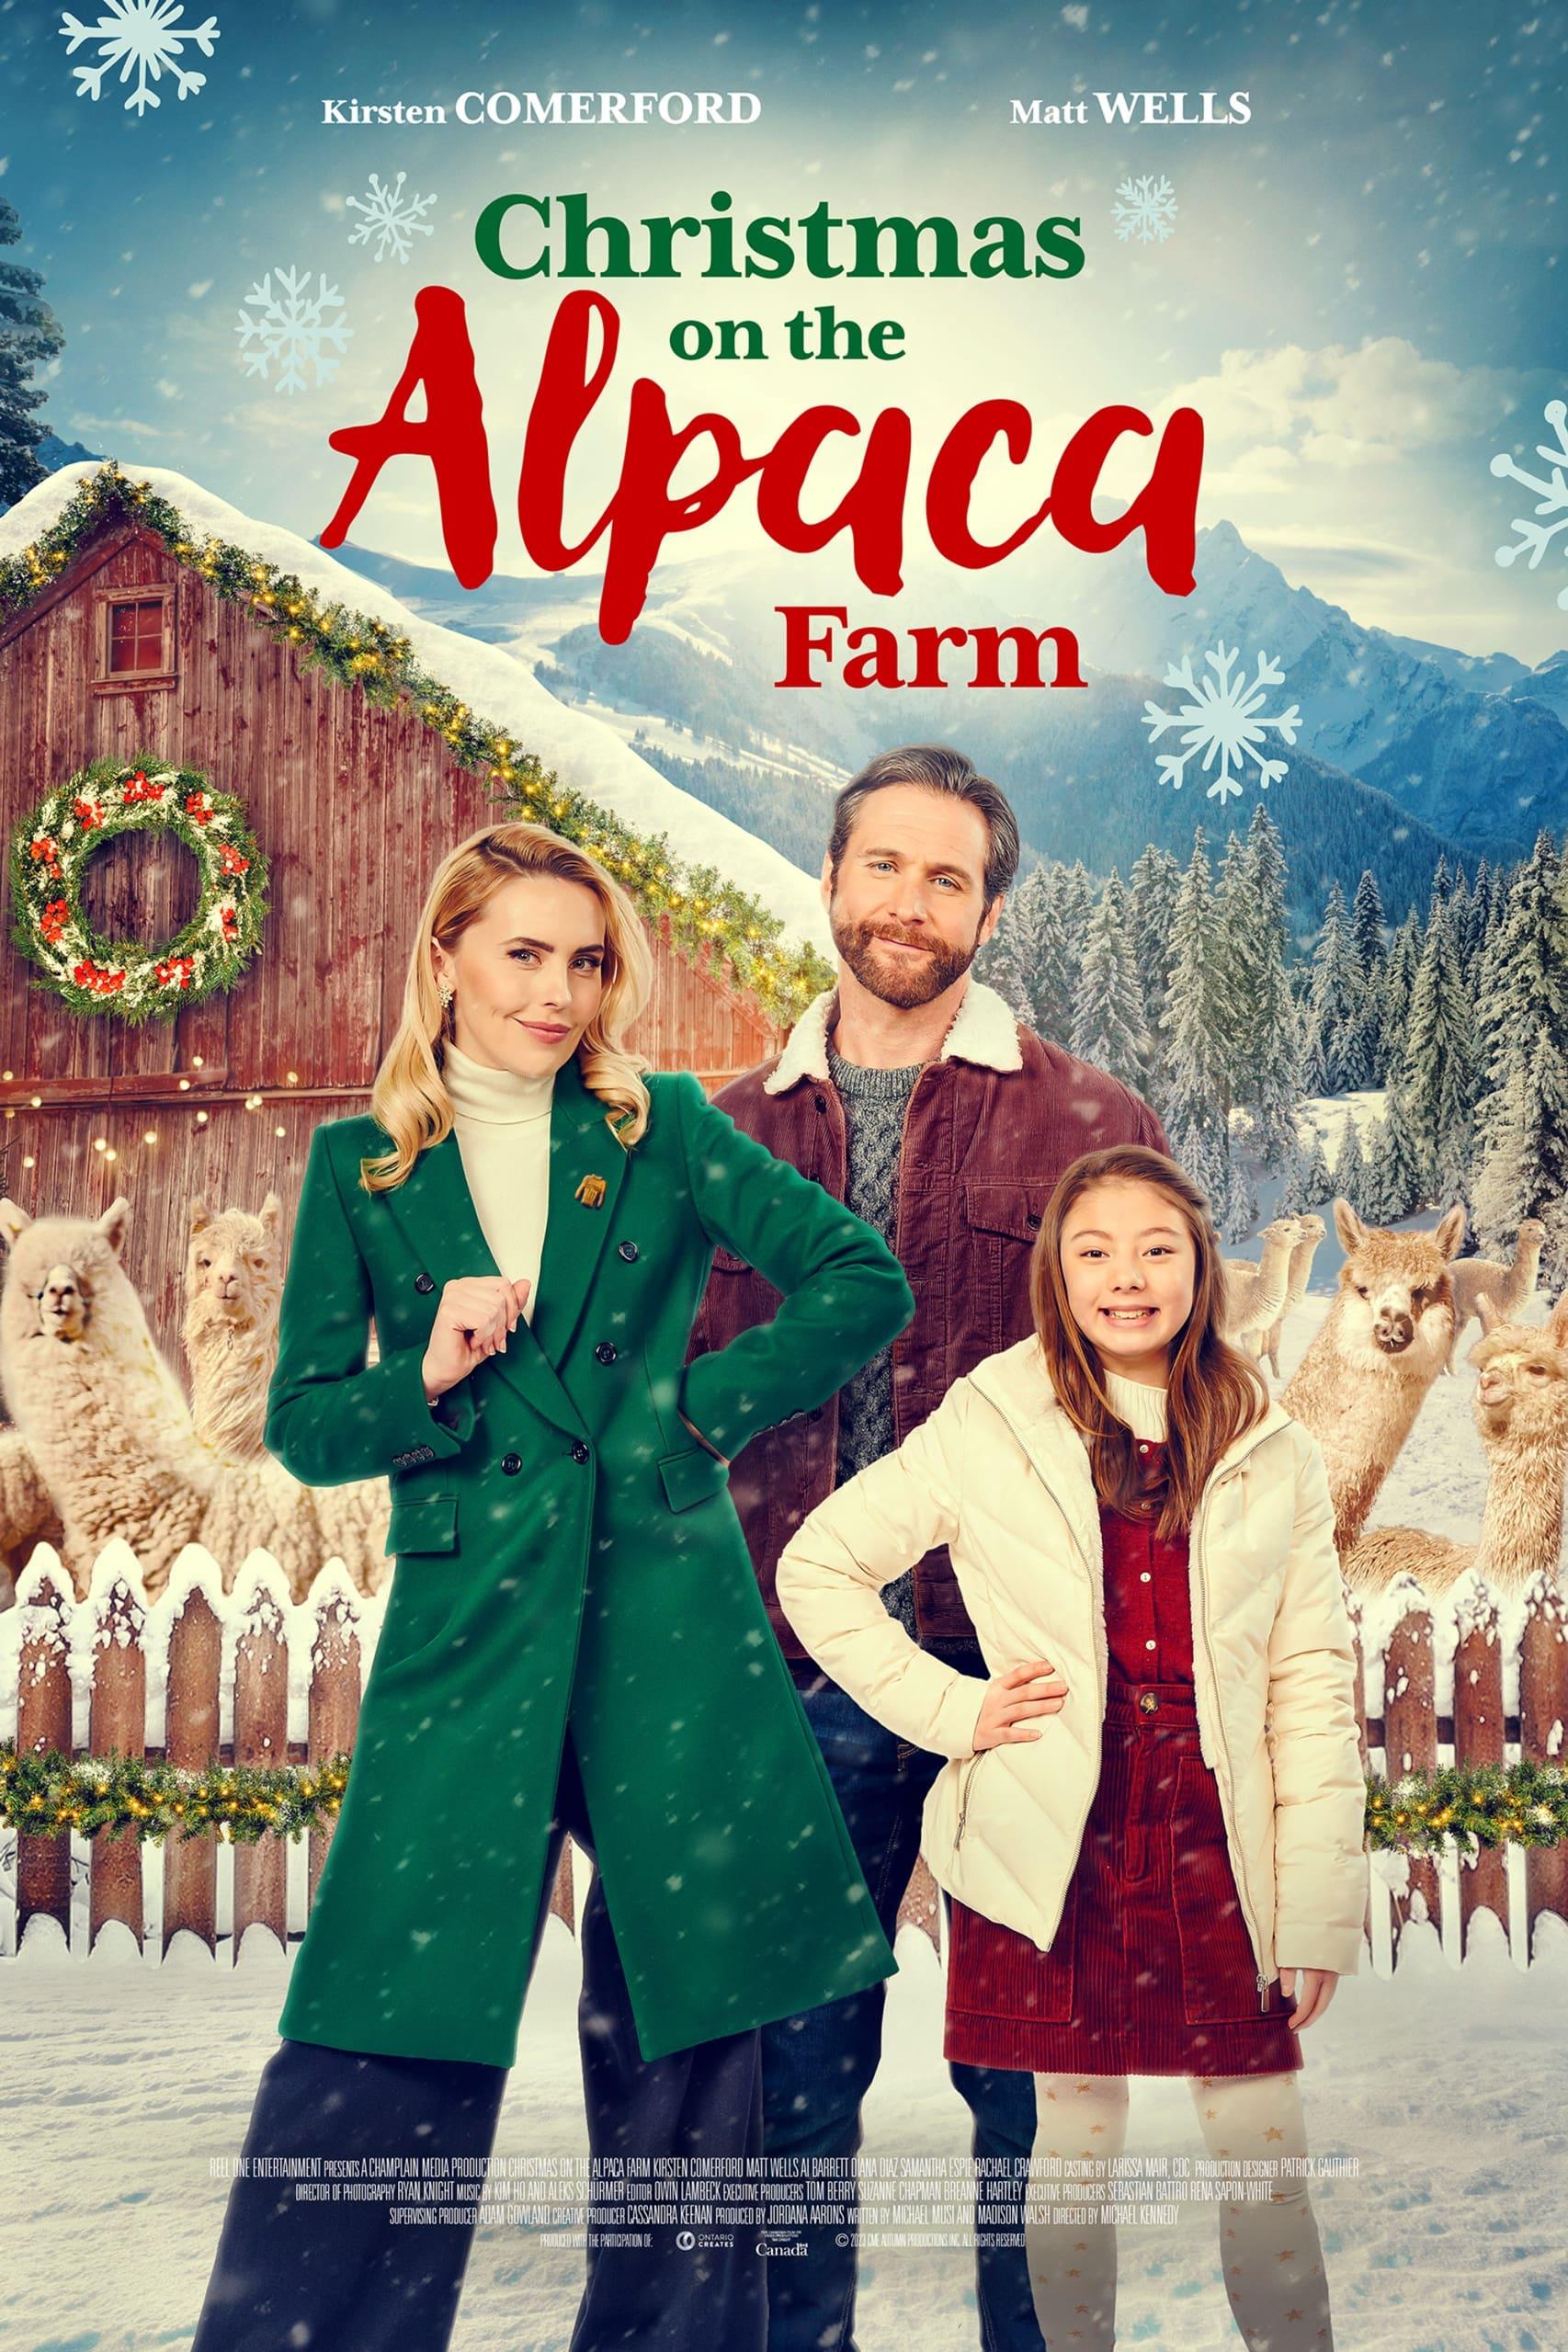 Christmas on the Alpaca Farm poster